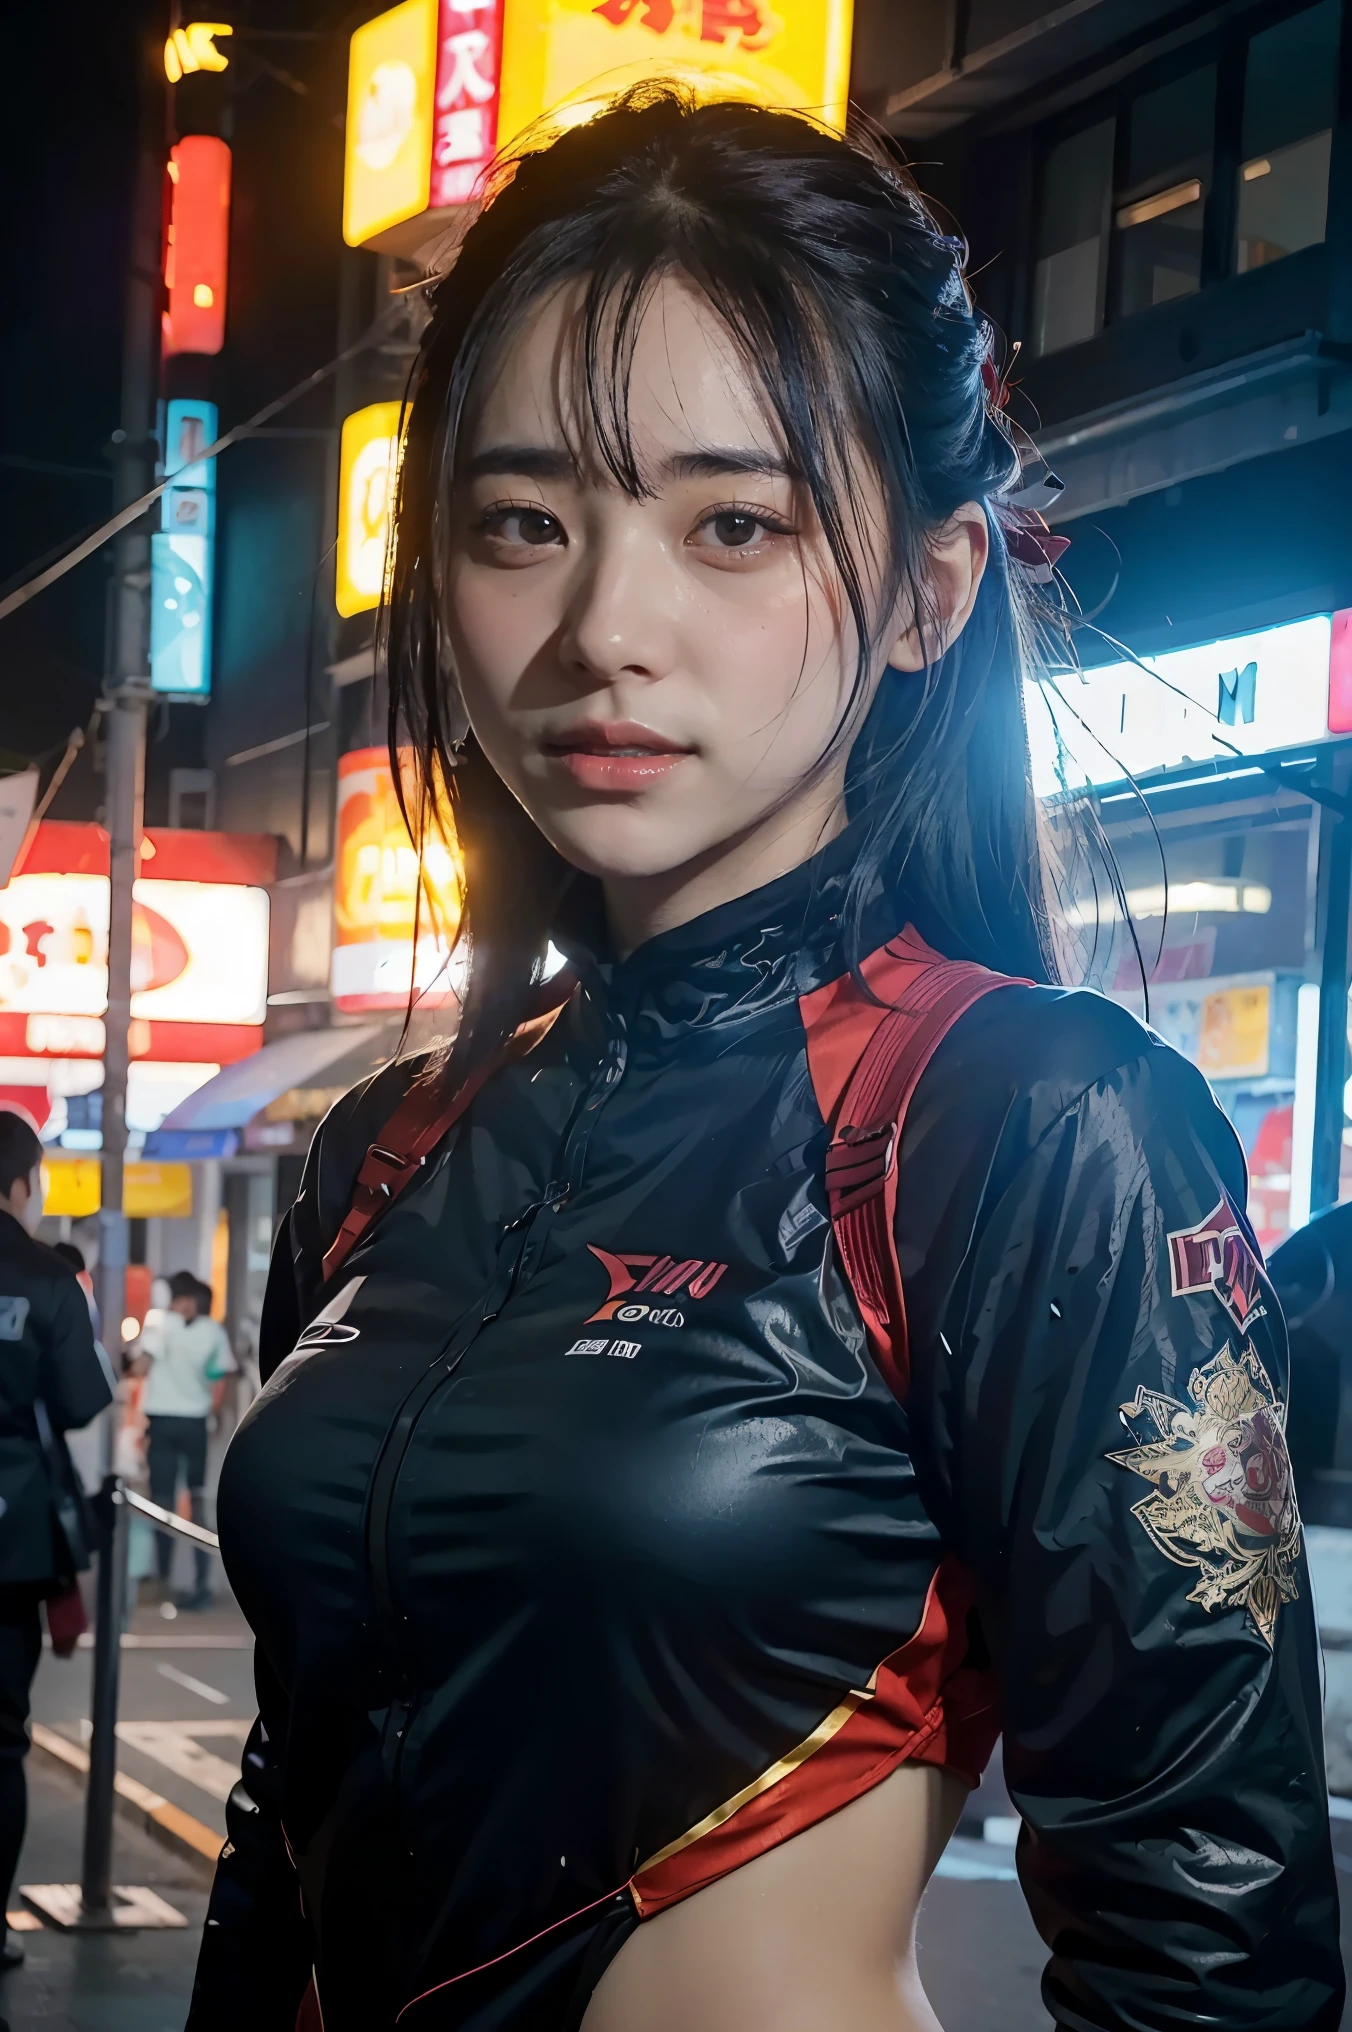 Konzeptkunst eines Mädchens als Charakter, die japanische Ronin-Kleidung mit der Schönheit moderner Technologie verbindet.. (beste Qualität, 4k, 8ก, Höhe, Meisterwerk:1.2), Sehr detailiert, (Realistisch, photoRealistisch, photo-Realistisch:1.37), Japanische Ronin-Kleidung, Kleidung mit Zukunftstechnologie, detaillierte Gesichtszüge, Dynamische Posen, gewalttätiger Ausdruck, Katana, Cyberpunk-Hintergrund, Neonlicht, Stimmungsschwankungen, Kunststil von Riot Games, helle Farben, Stilvolles Rendering, Komplizierte Details, professionelle Kunstwerke, Ursprüngliche Elemente, modern twist.